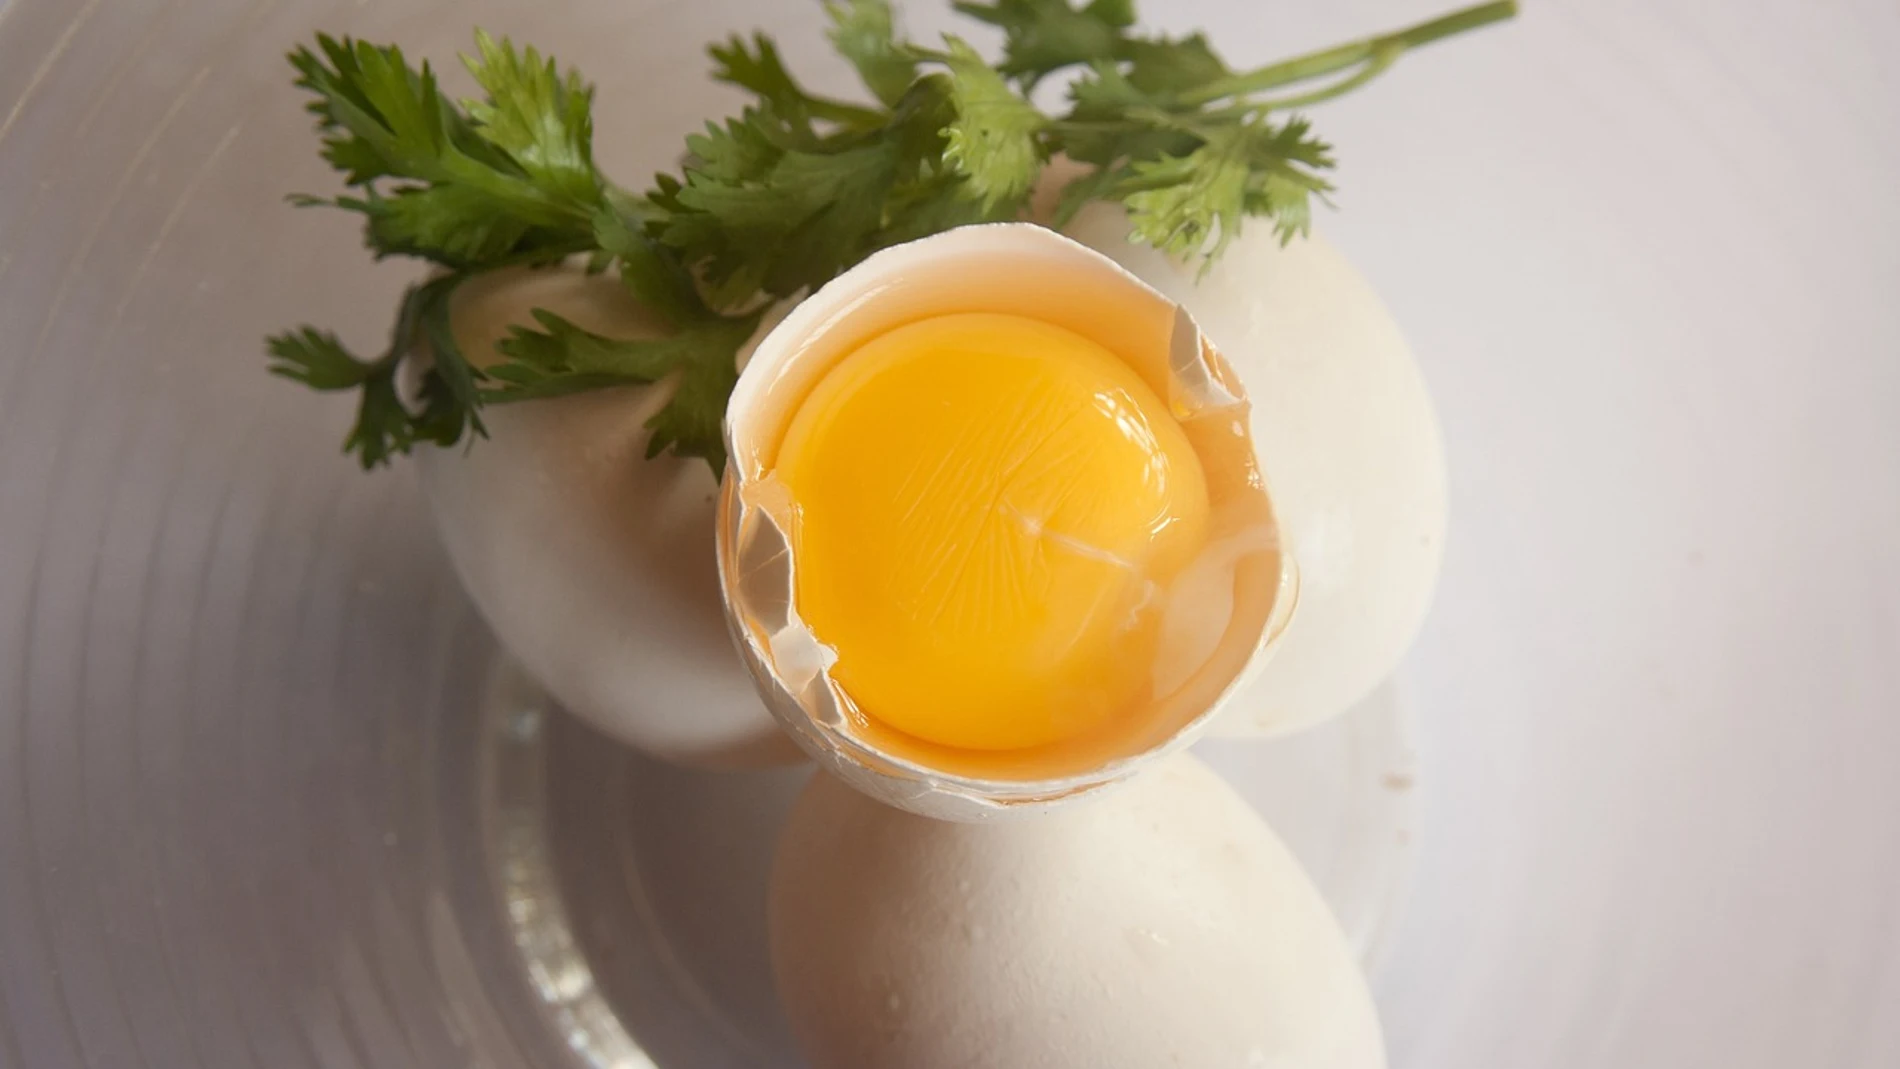 Los huevos no tienen una fecha de caducidad, sino una fecha de consumo preferente